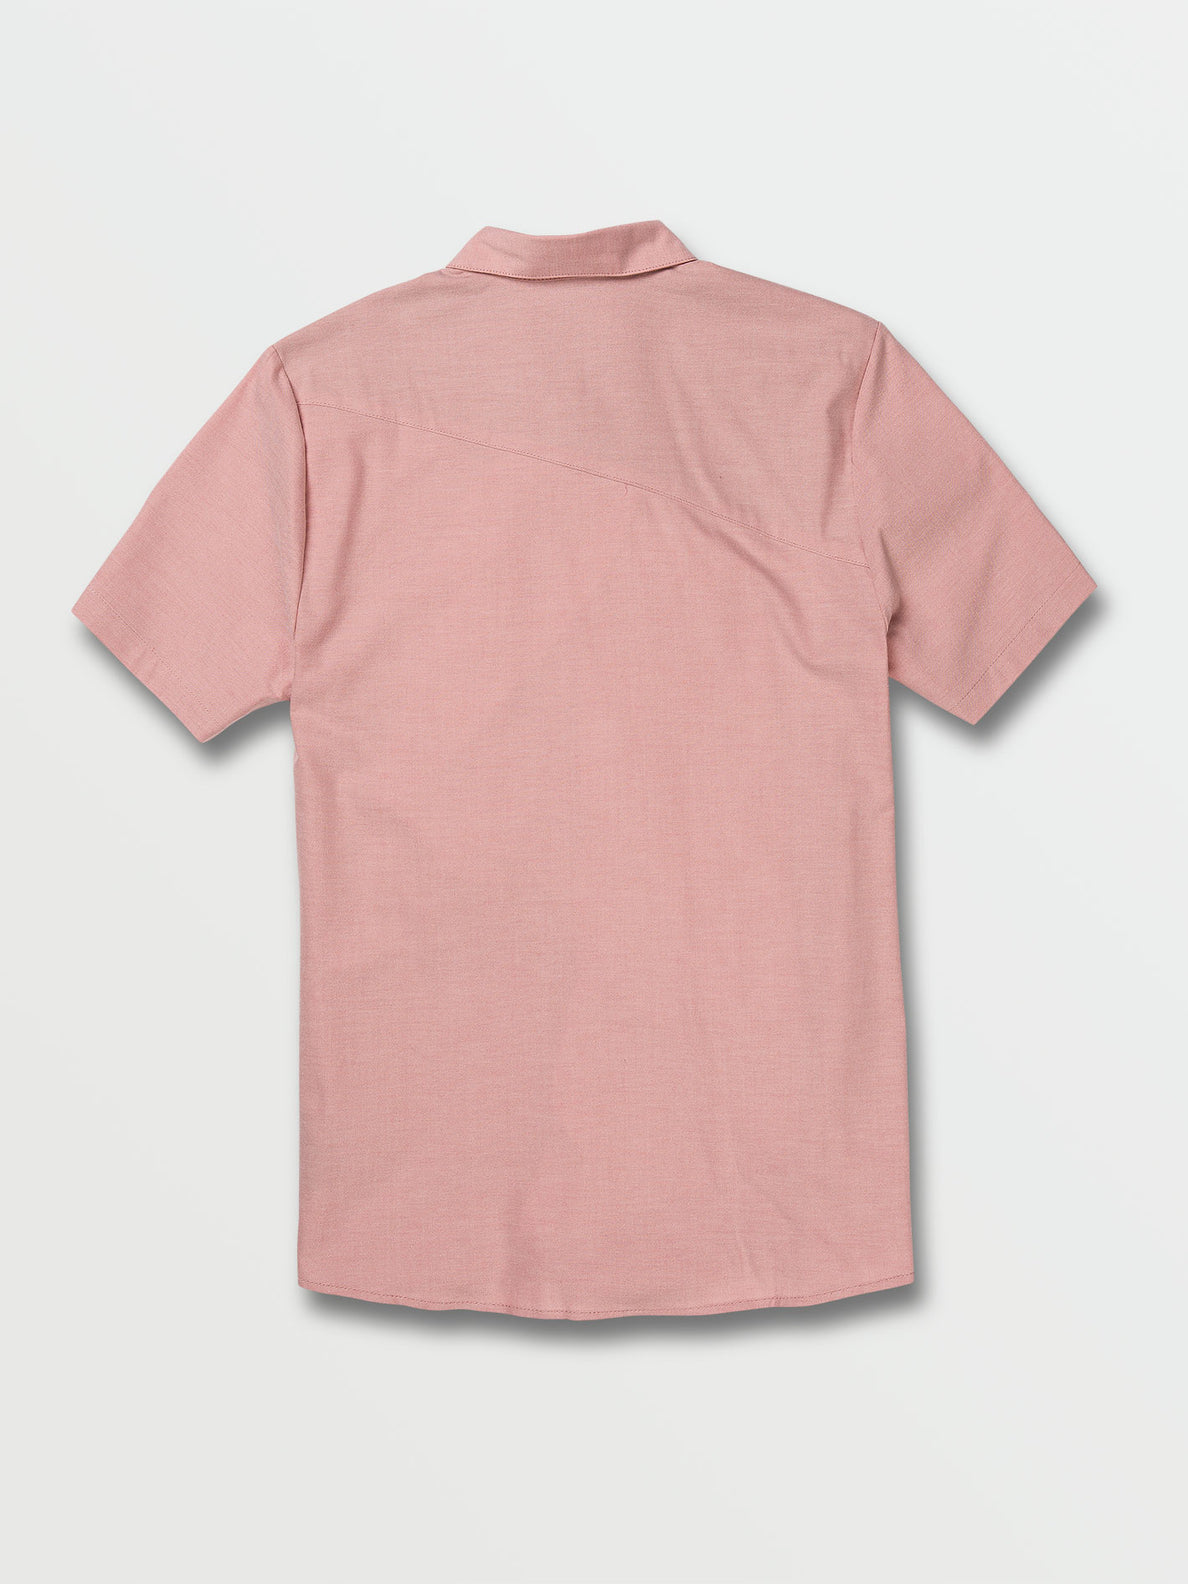 Everett Oxford Short Sleeve Shirt - Desert Sand (A0432105_DSS) [B]